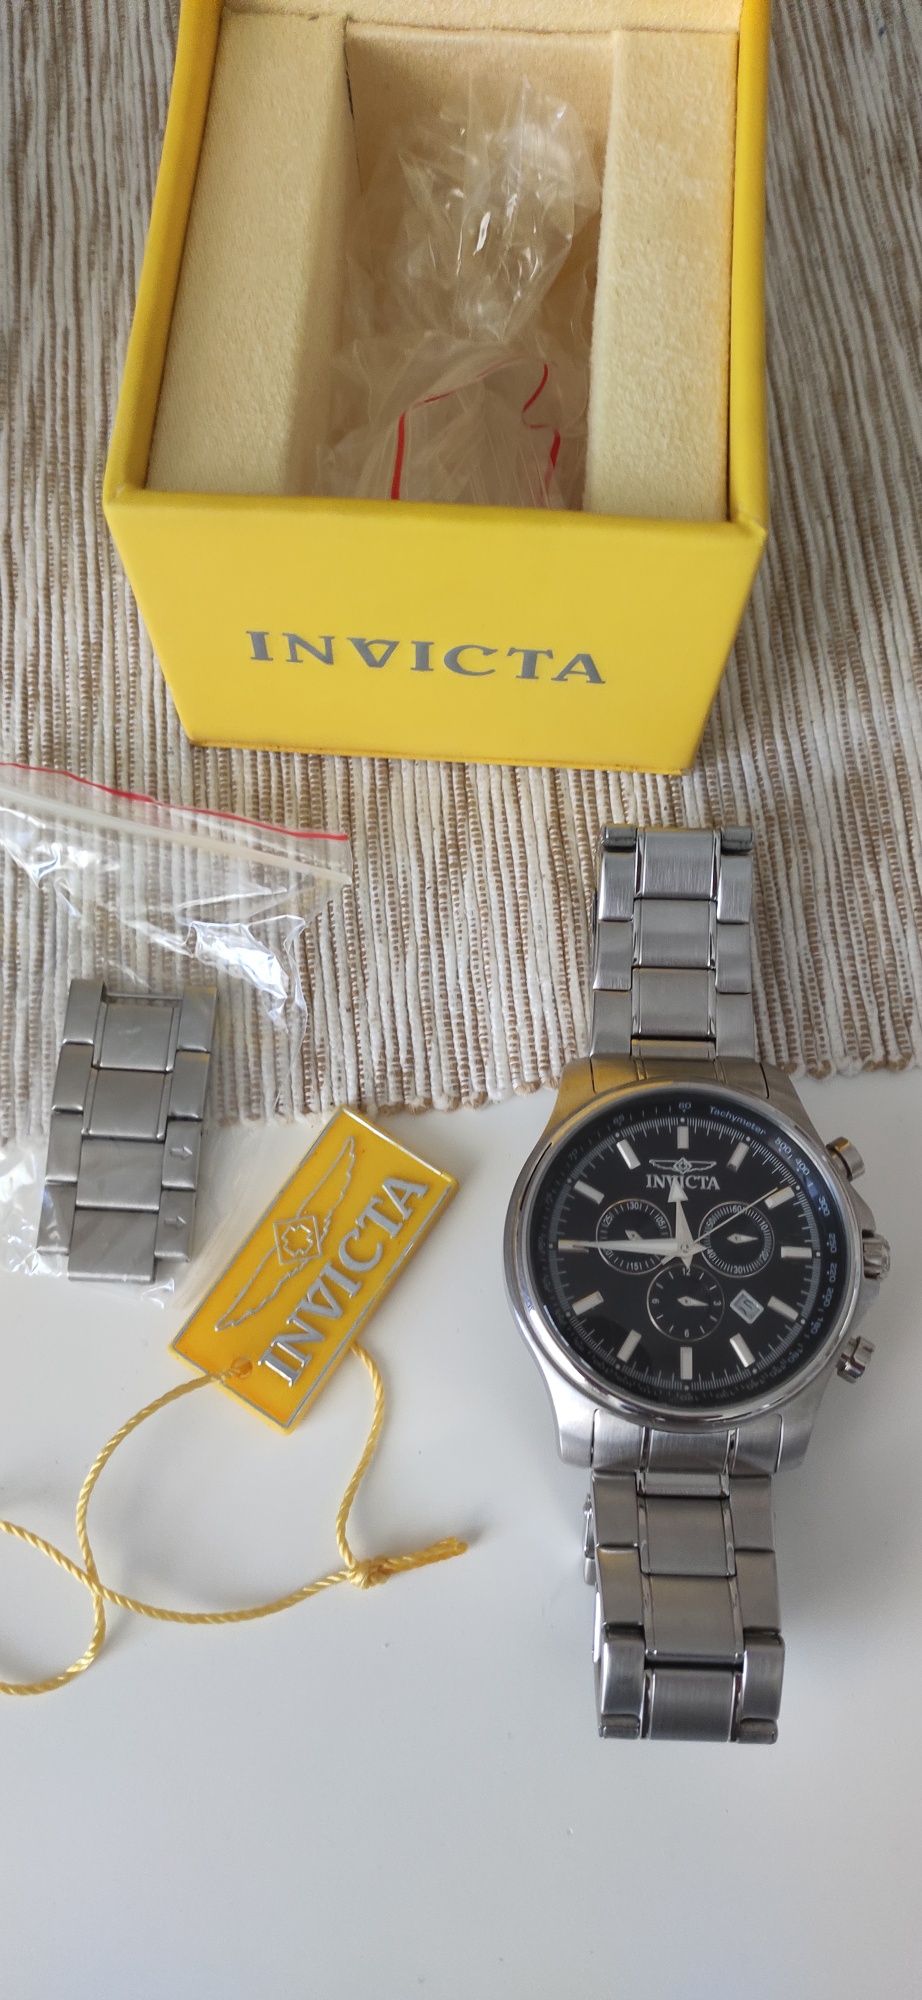 2 часовника Invicta, Signature 2 - 7420 & Specialty 1835